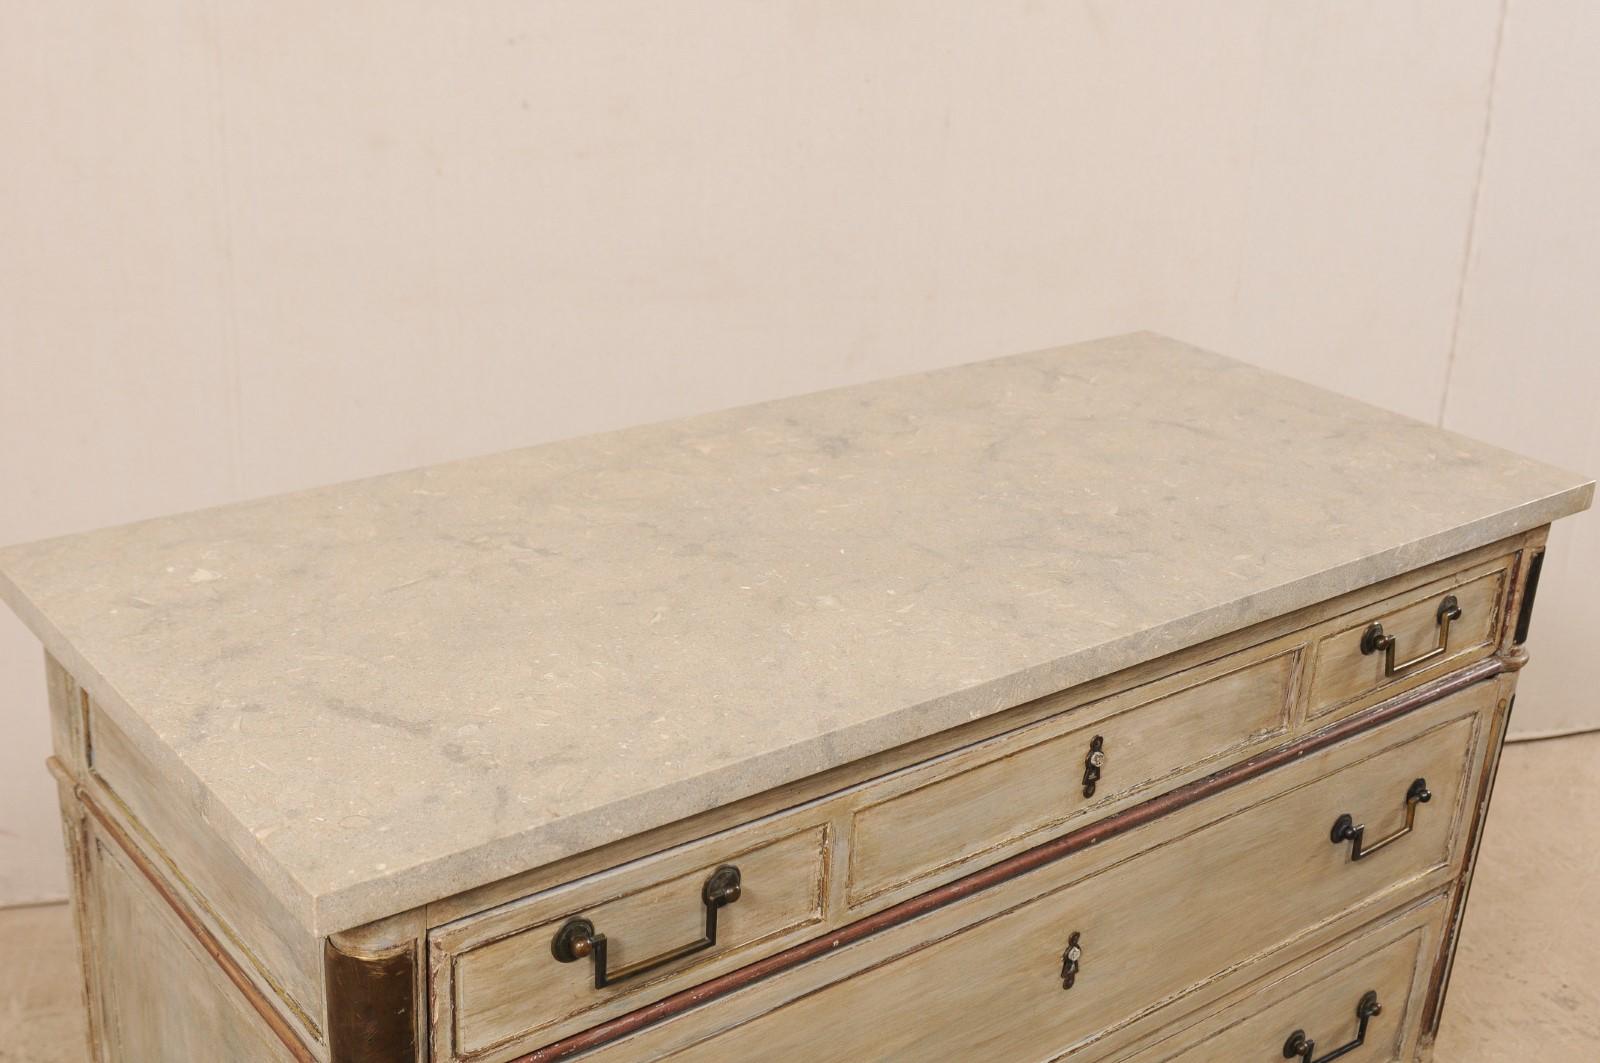 Frühes 19. Jh. Französische neoklassizistische Kommode mit versteinerter Kalksteinplatte (19. Jahrhundert)